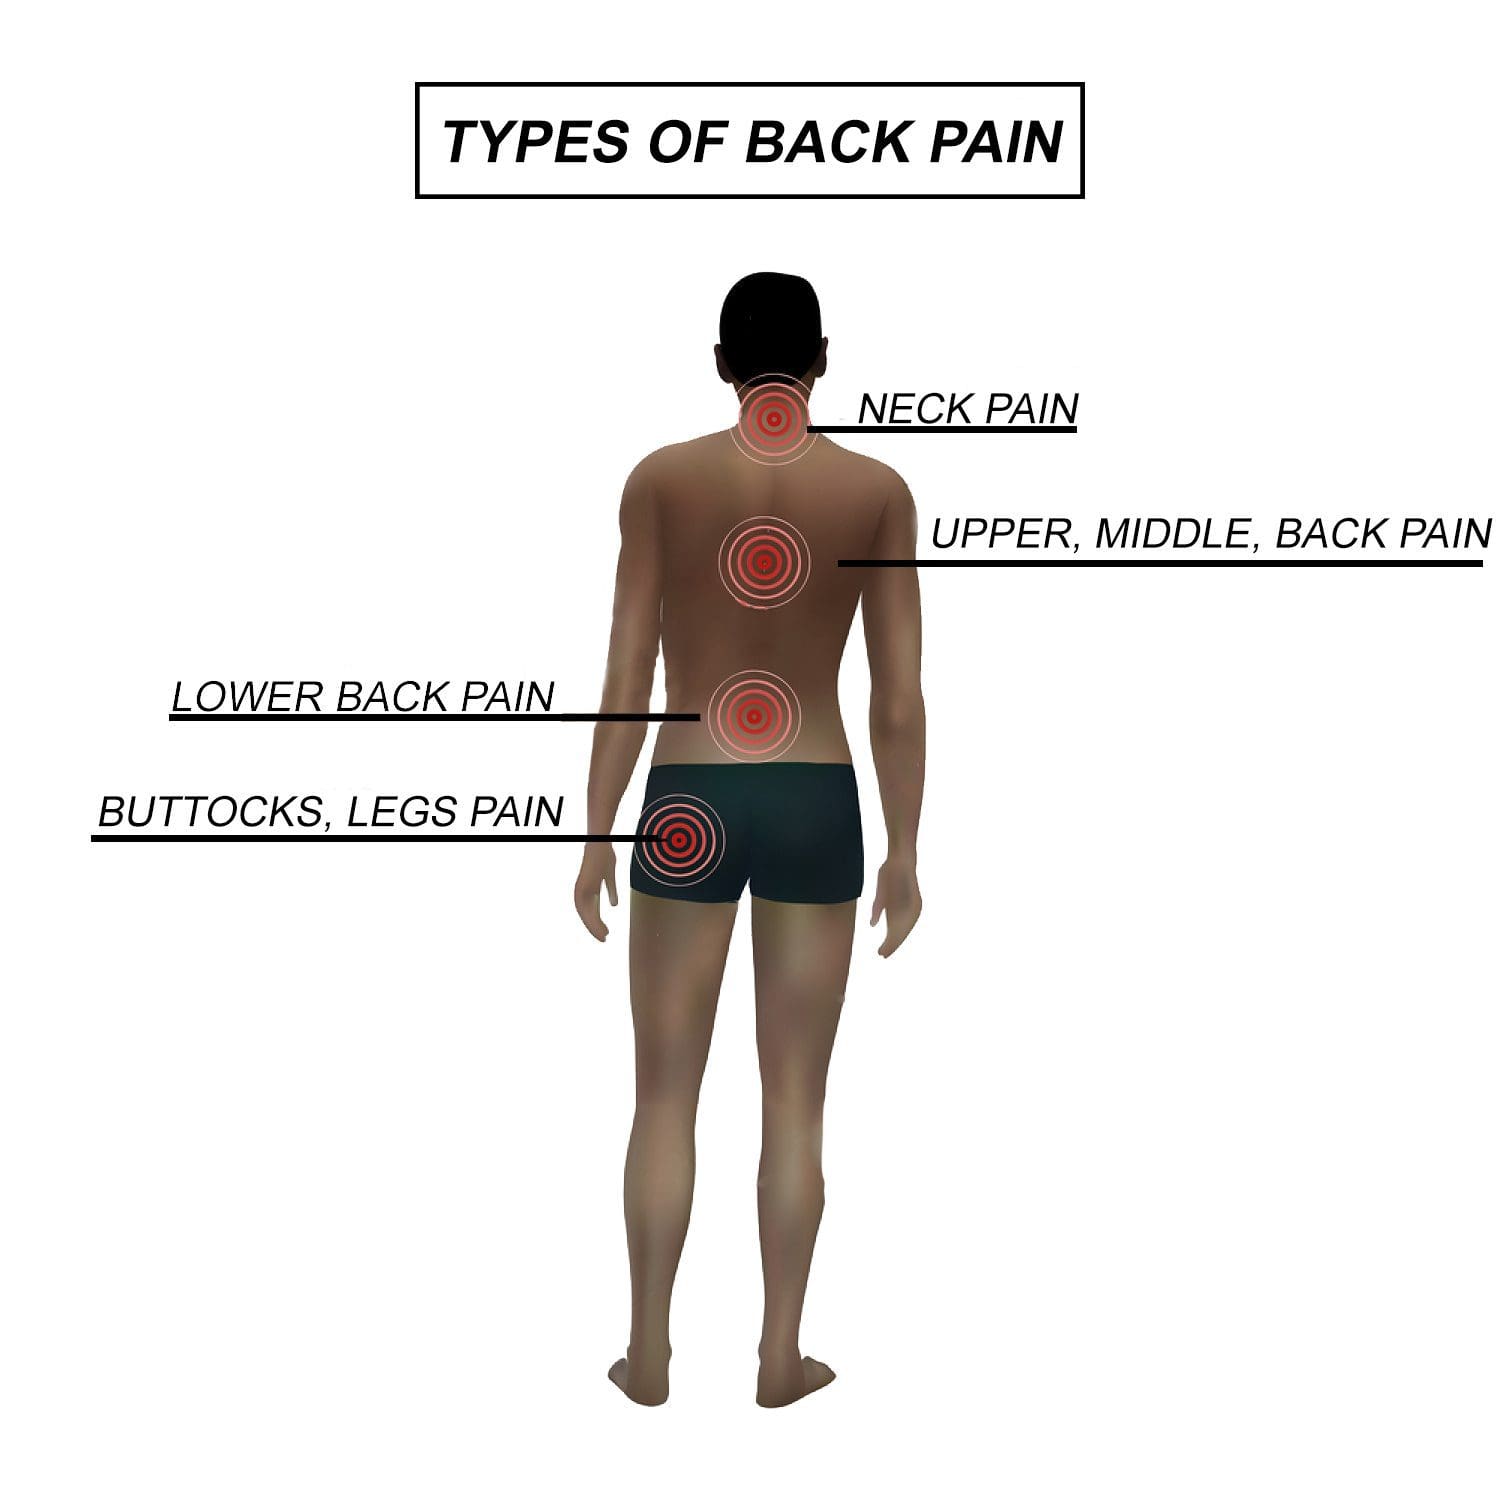 https://dralexjimenez.com/wp-content/uploads/2017/04/Types-of-Back-Pain.jpg